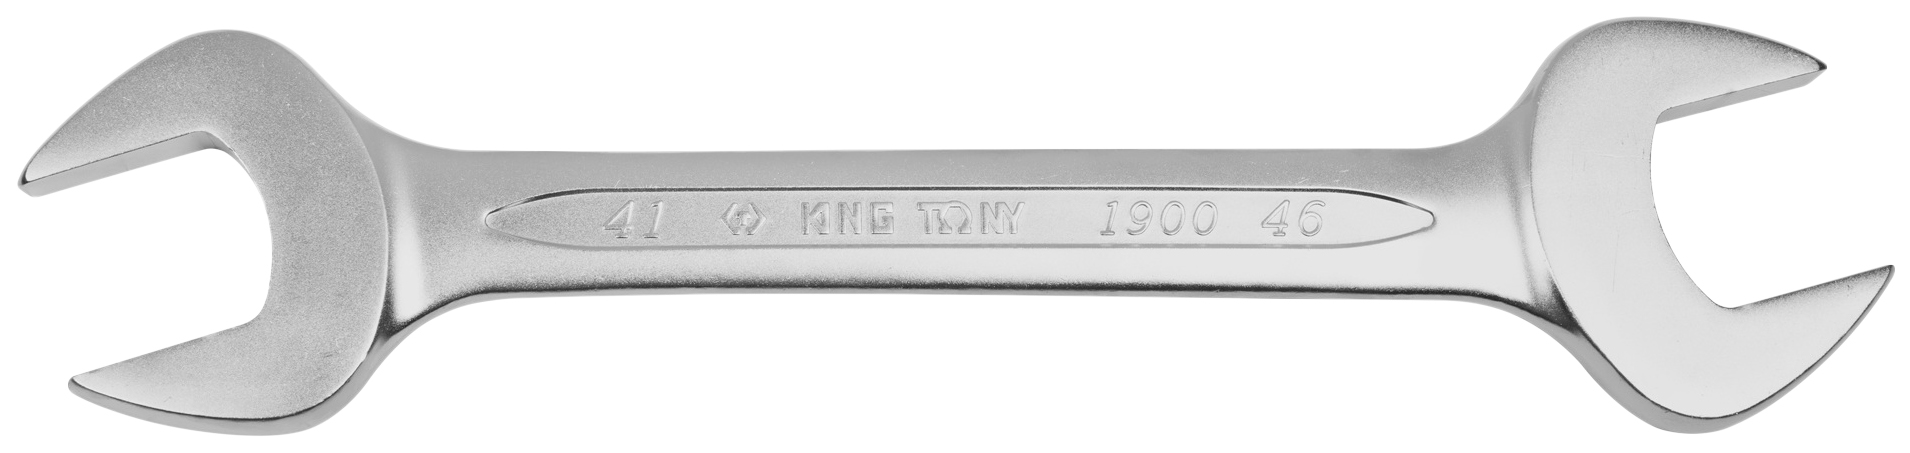 Рожковый ключ KING TONY 19004146